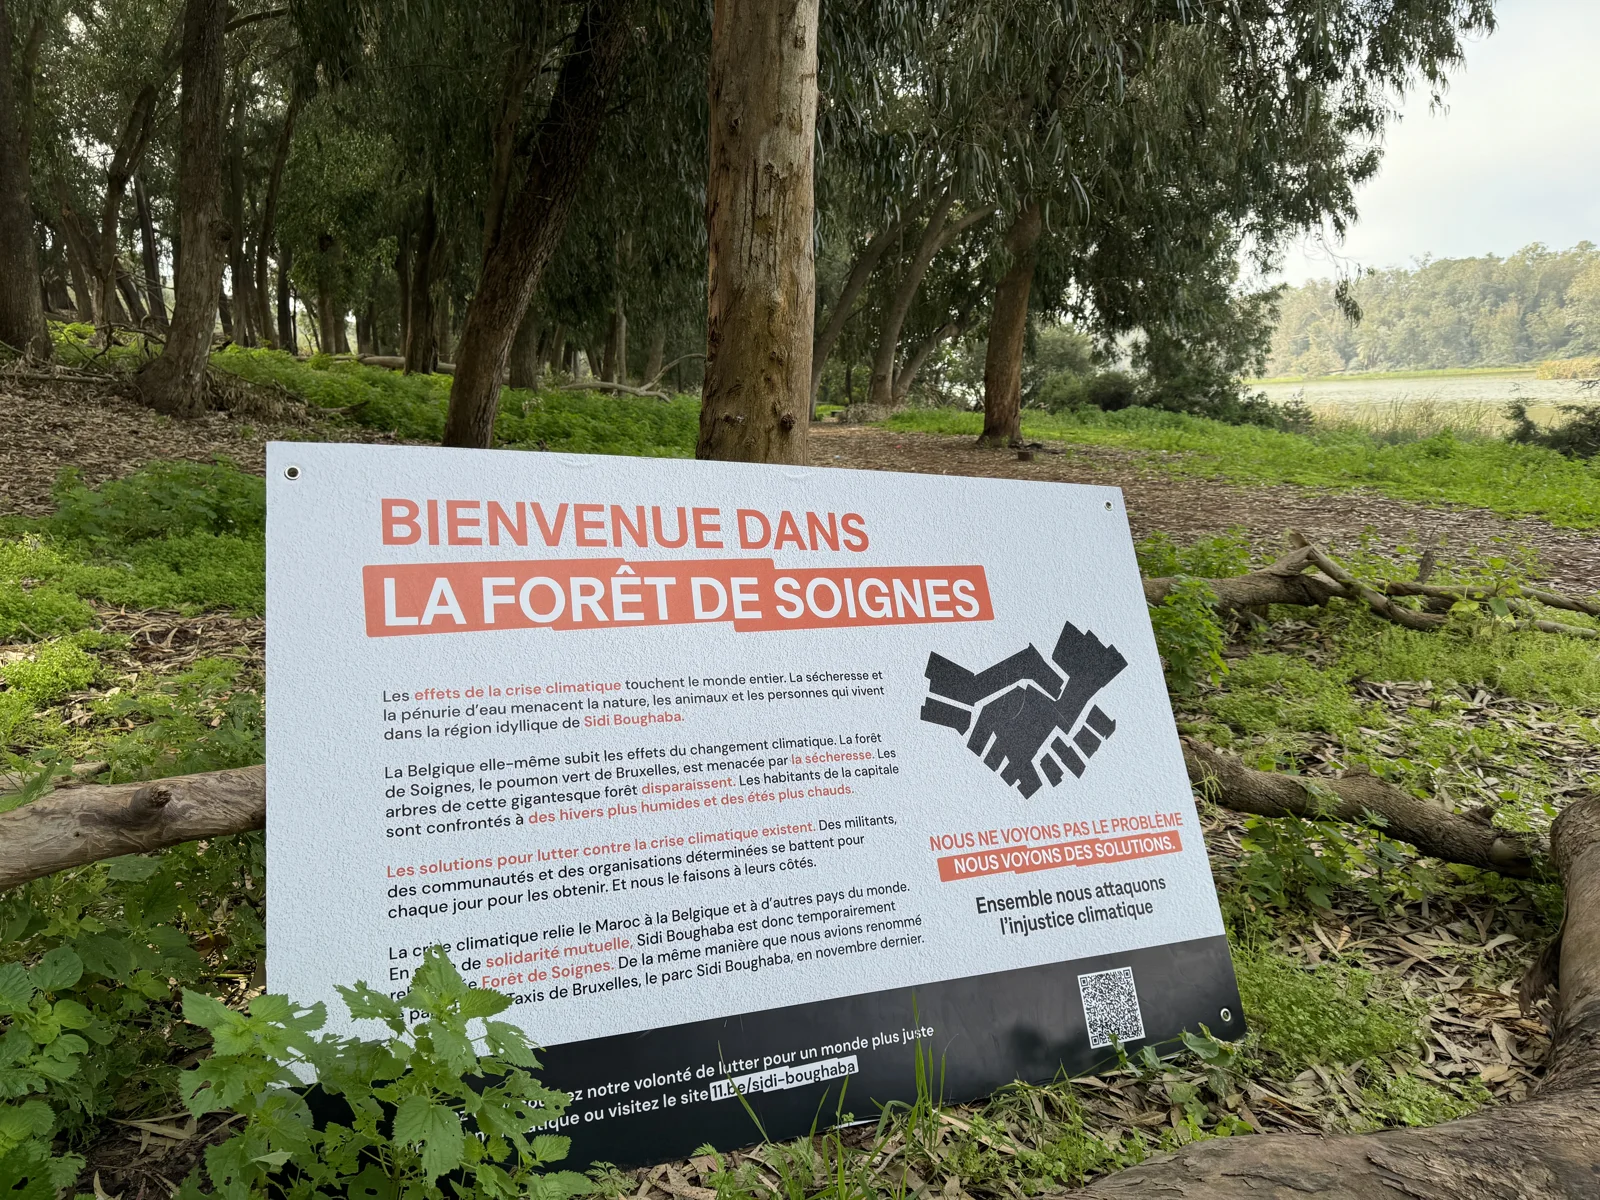 Un panneau placé devant une forêt souhaite la bienvenue aux visiteurs dans la forêt de Soignes.